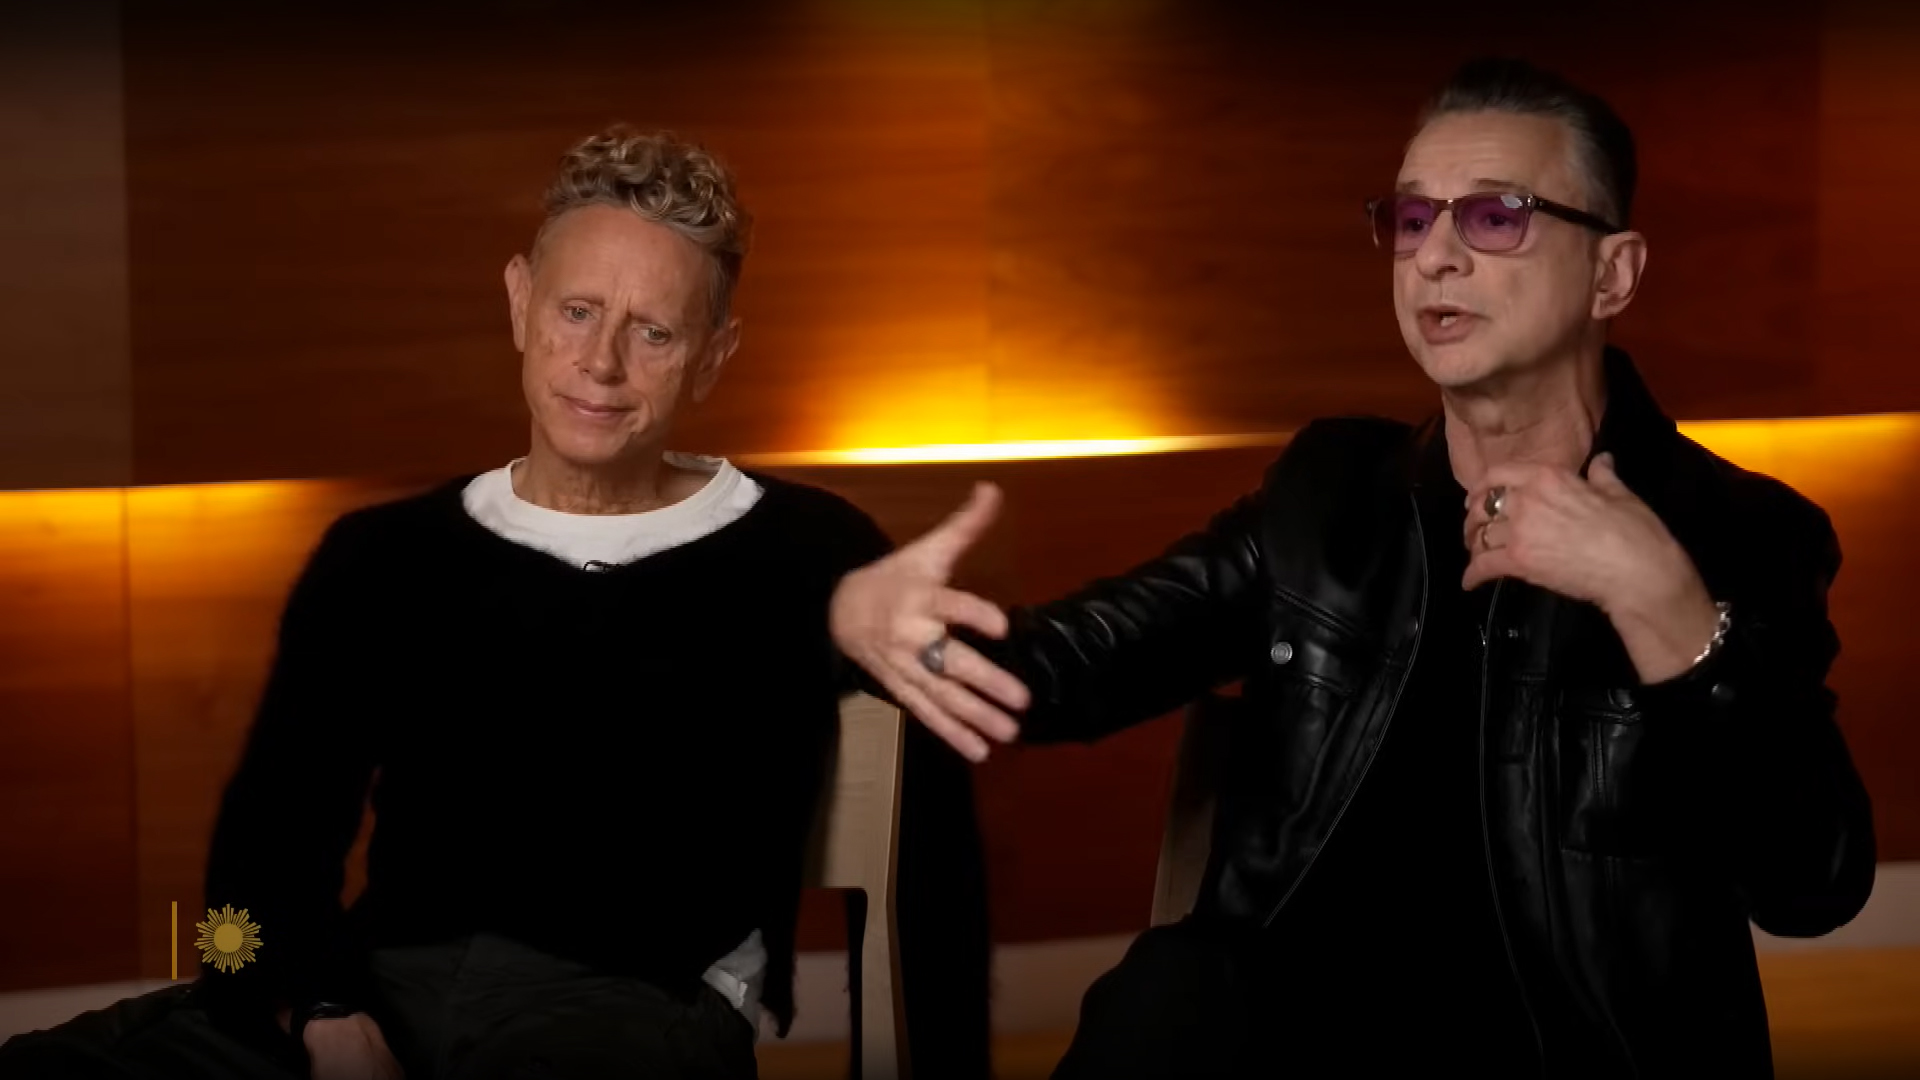 Depeche Mode tease announcement for next week